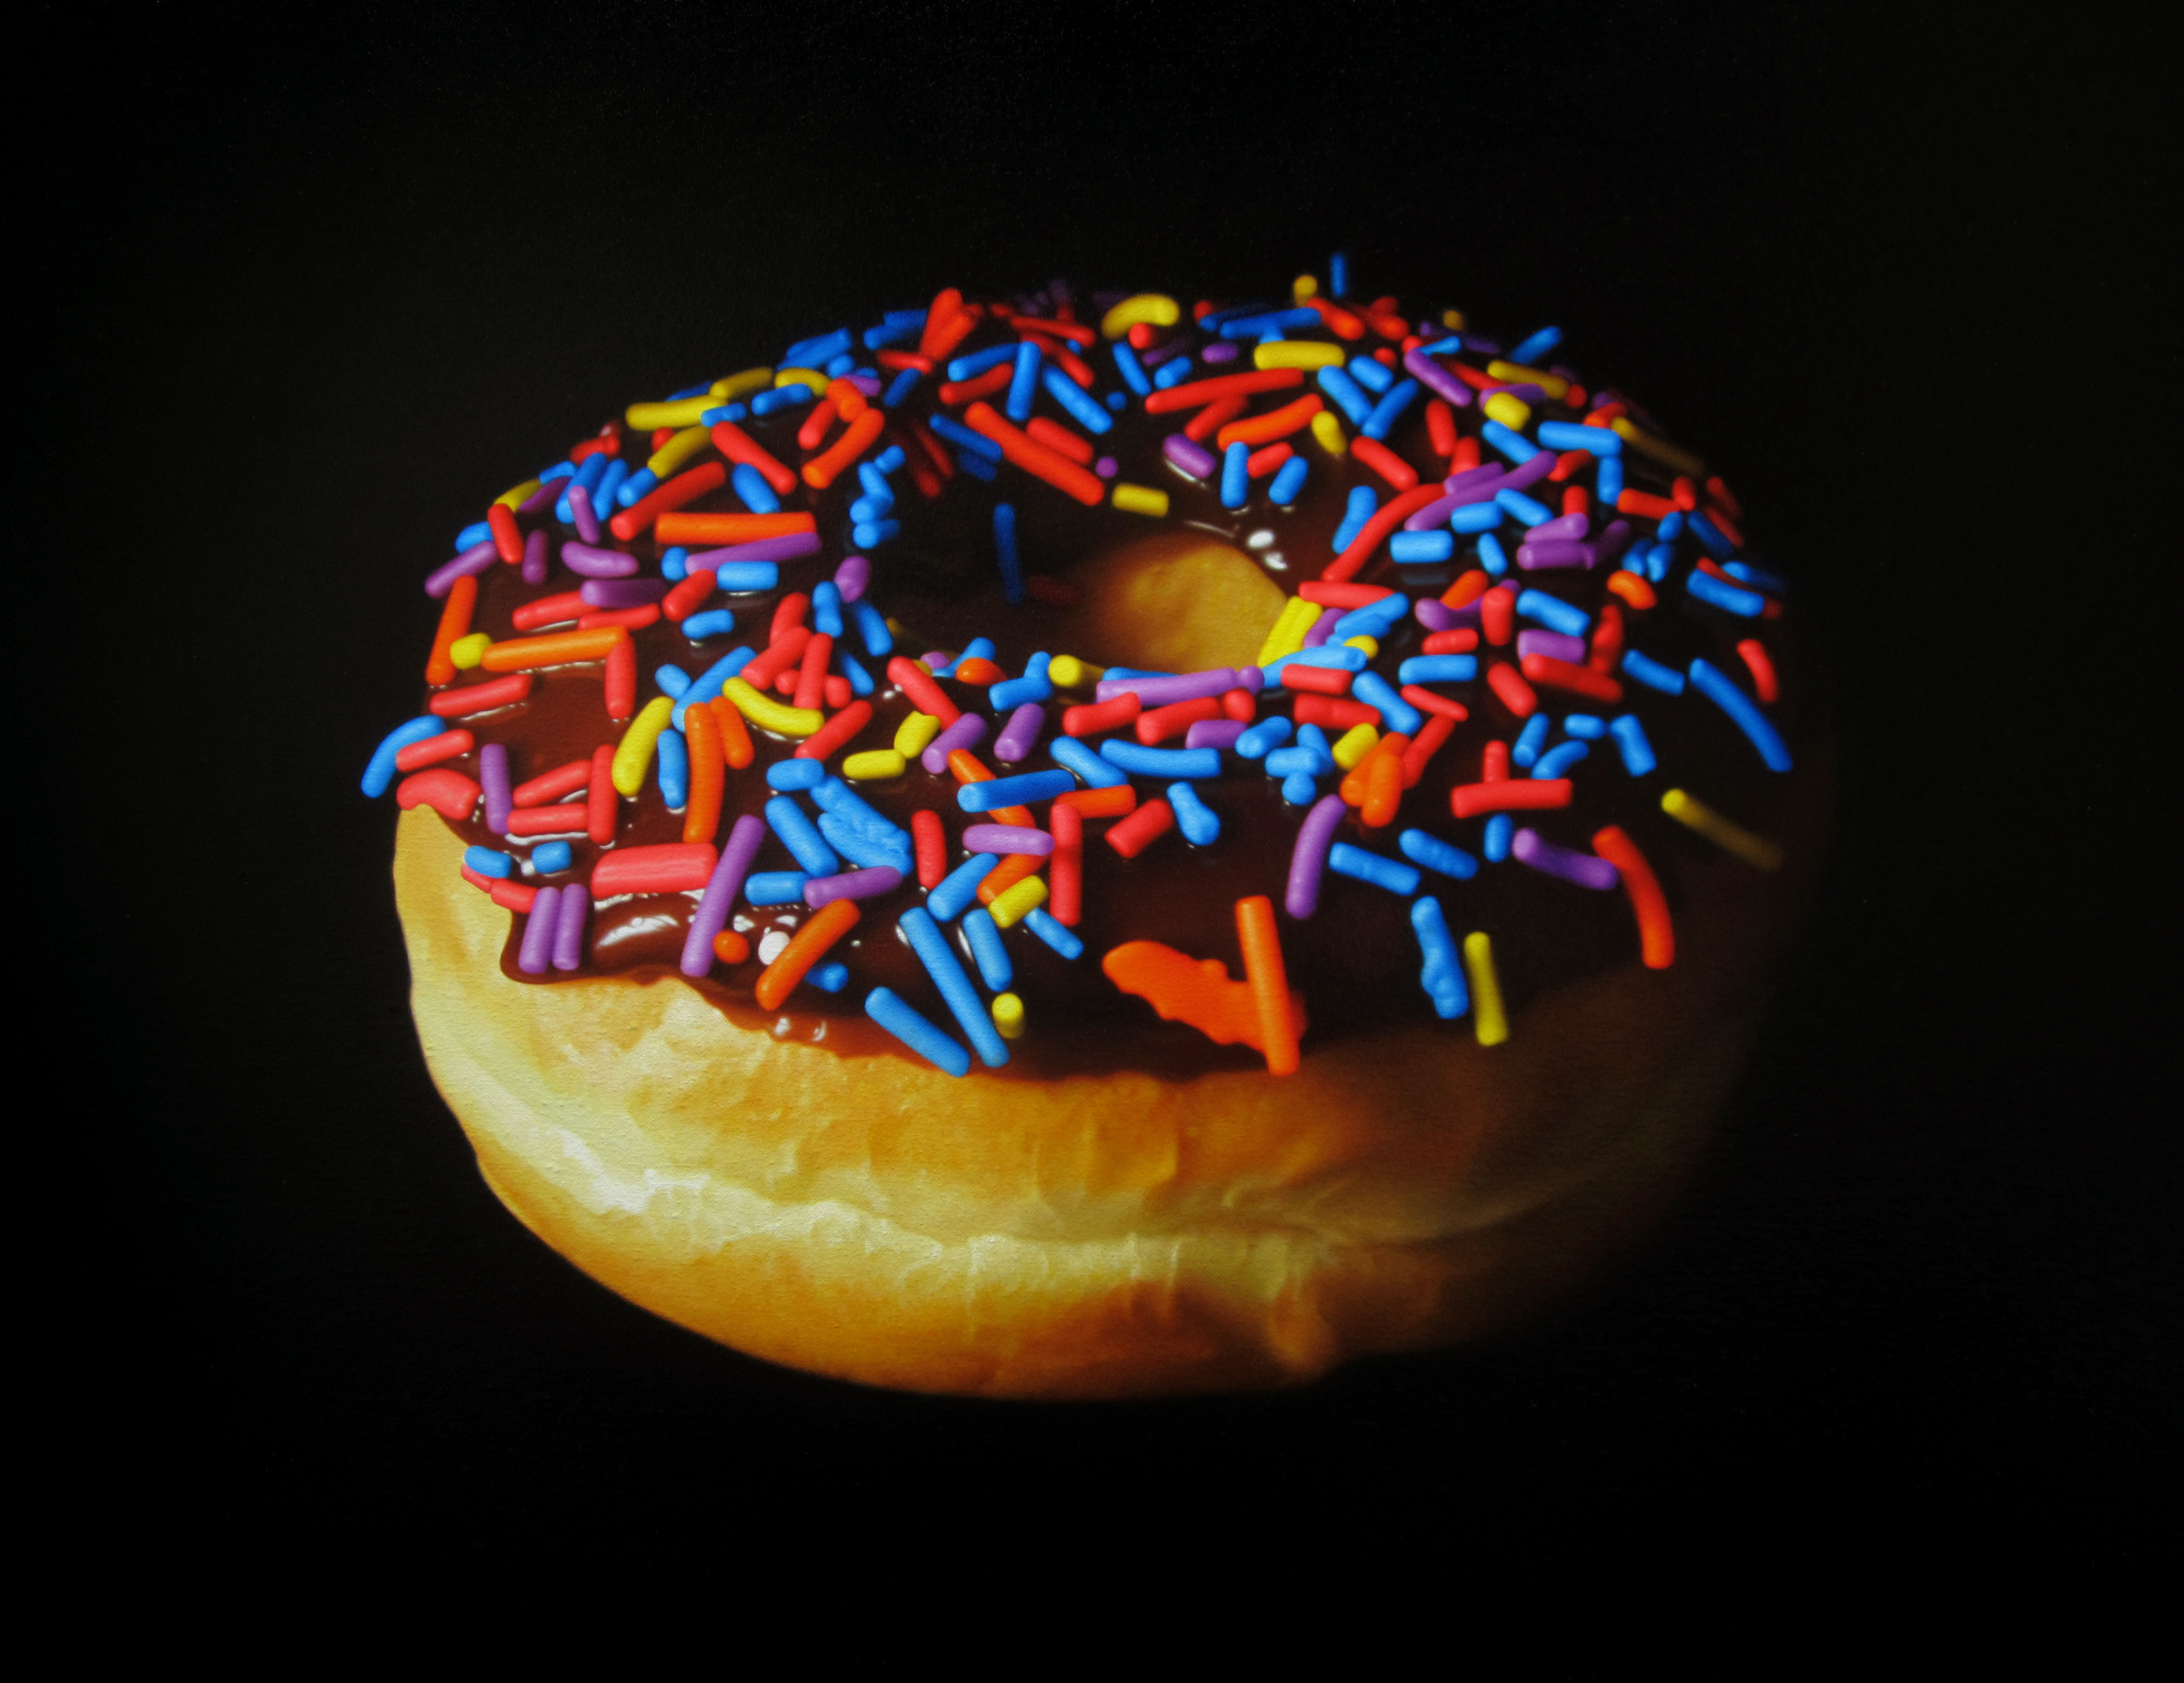  Sprinkle Donut.&nbsp;Oil on canvas. 